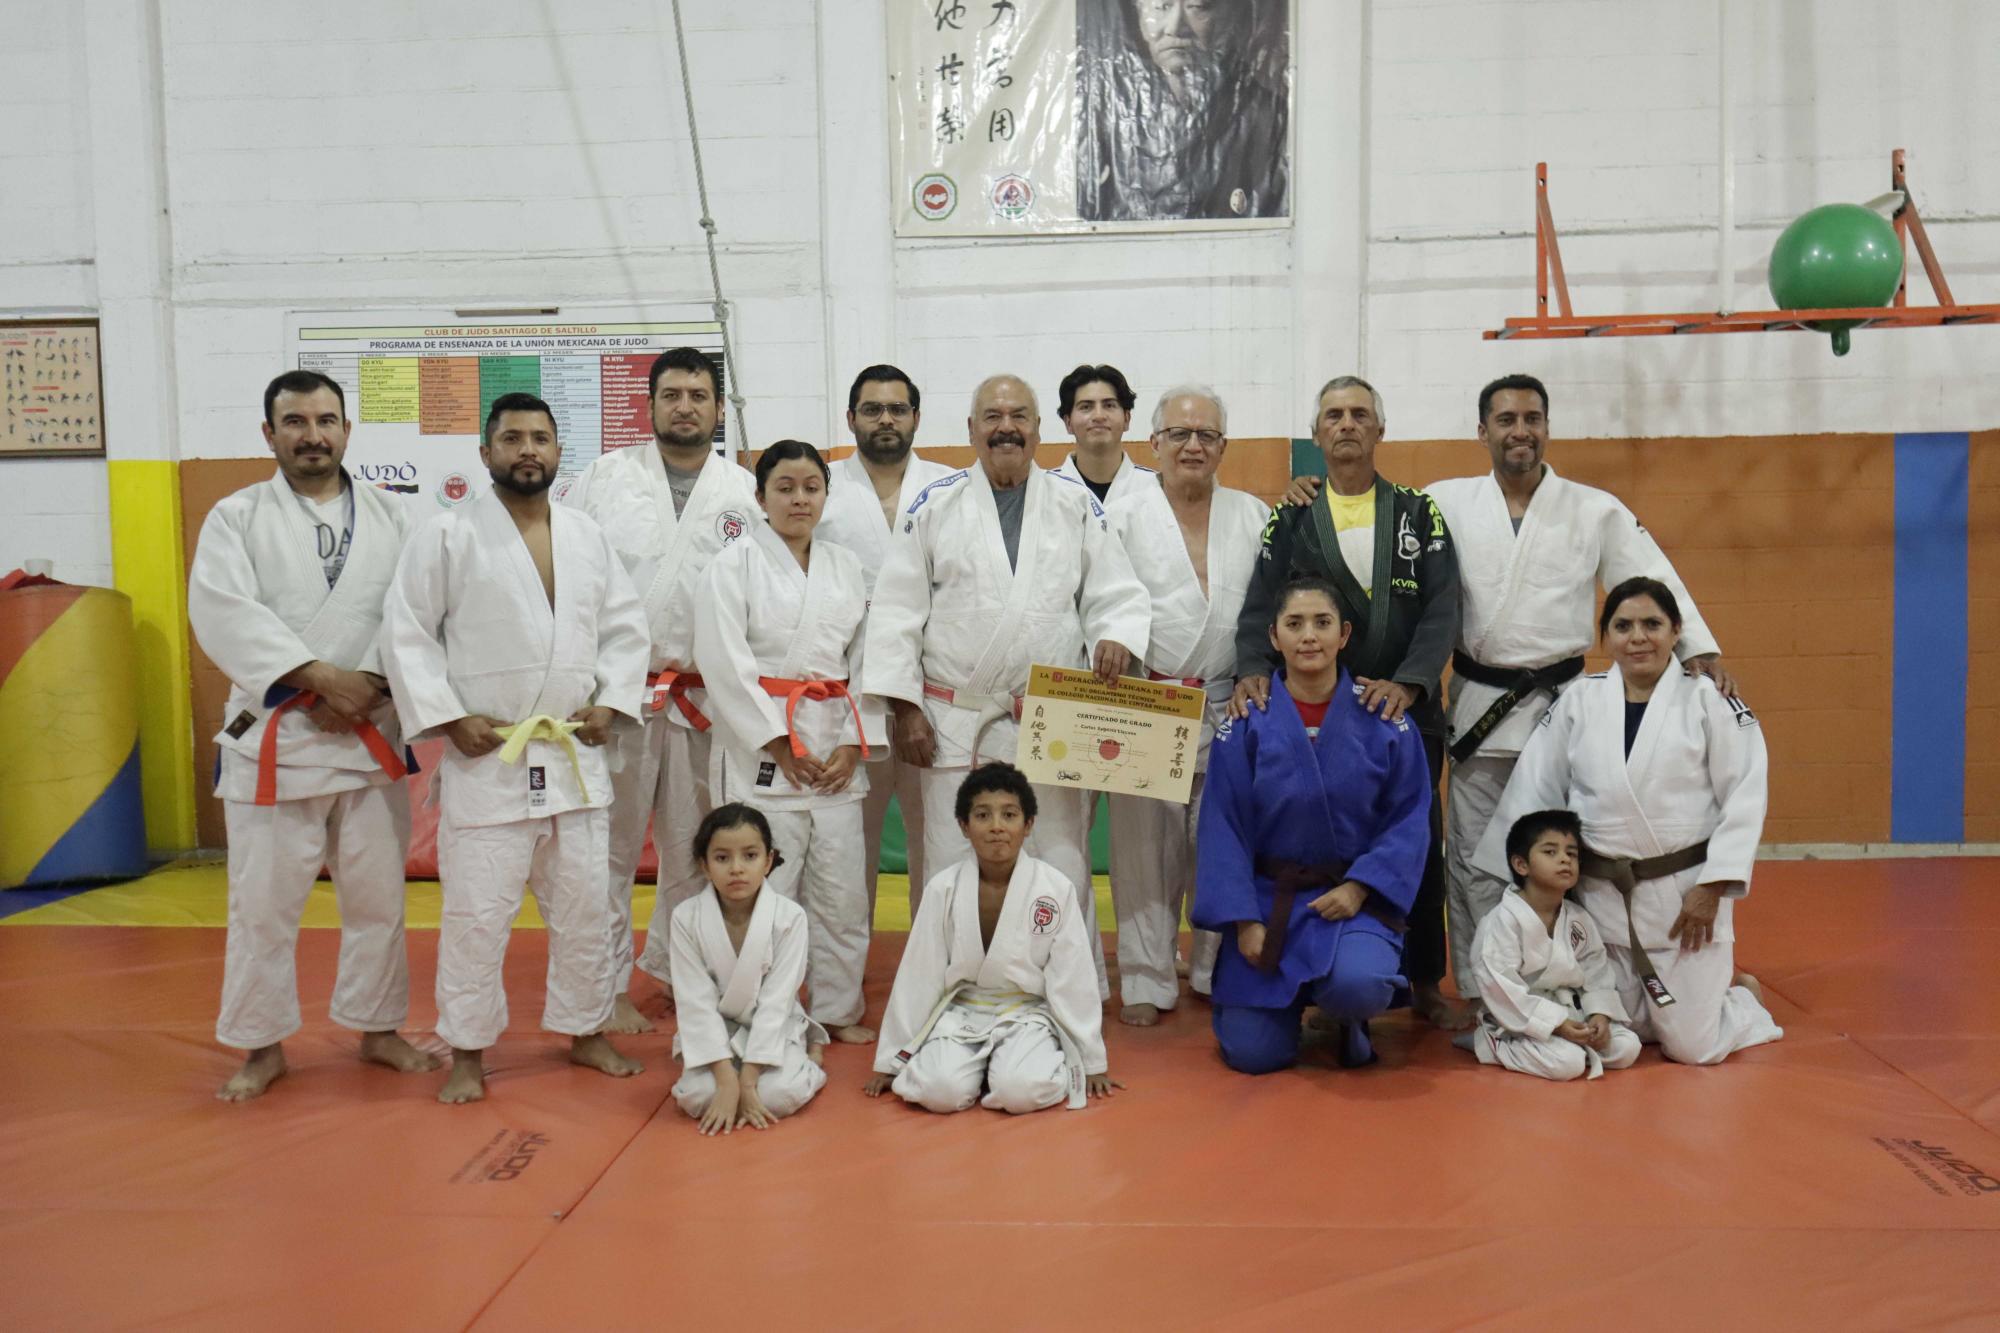 $!Uno de los valores que más rescatan los maestros del Judo, es la unión y la fraternidad que hay entre la comunidad judoca.